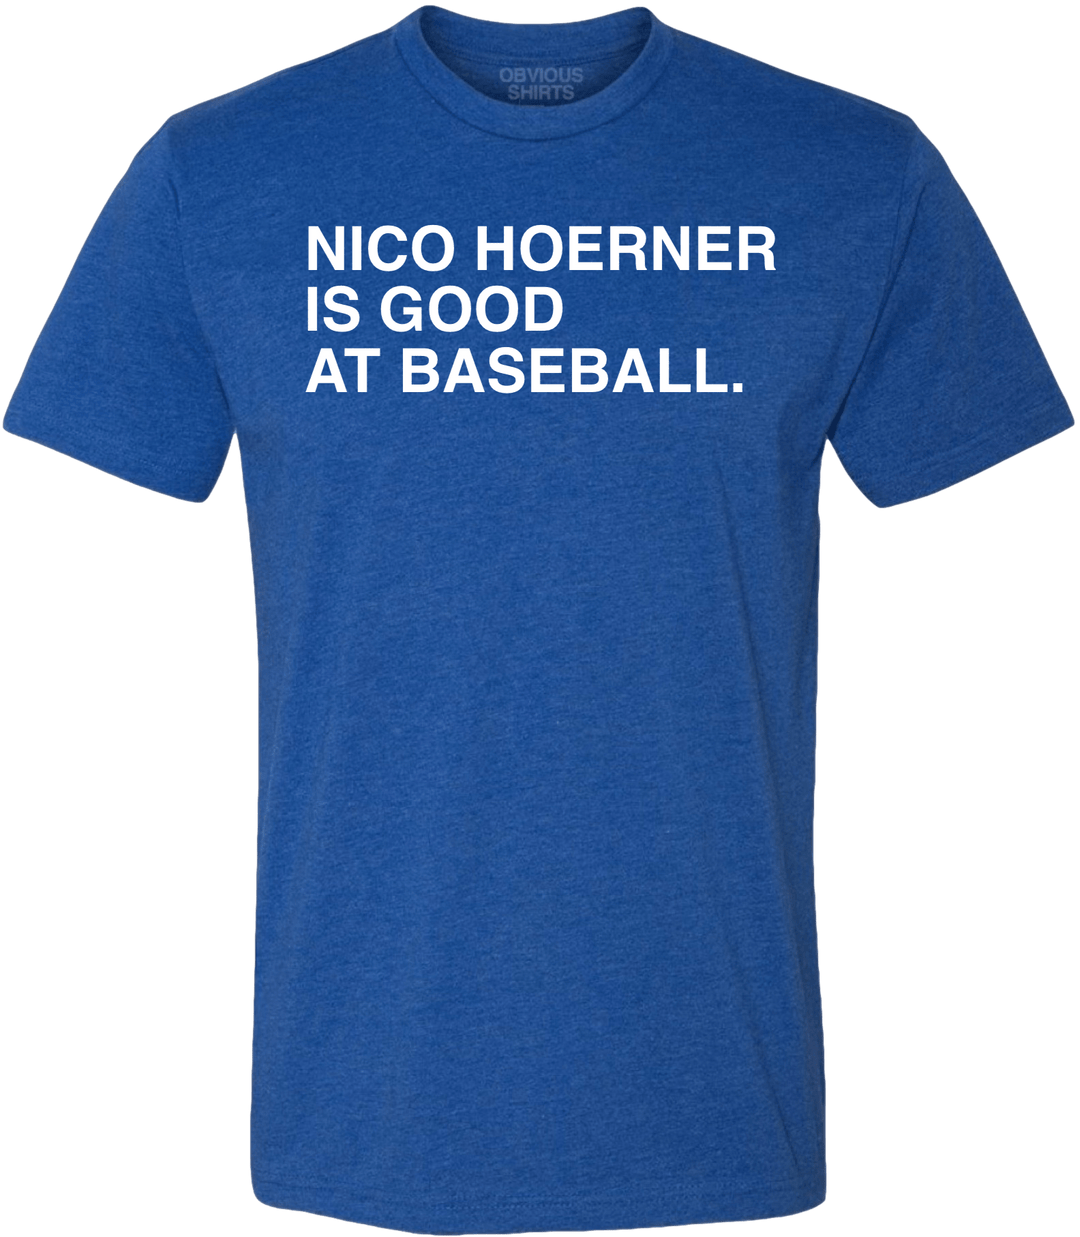 NICO HOERNER IS GOOD AT BASEBALL. - OBVIOUS SHIRTS